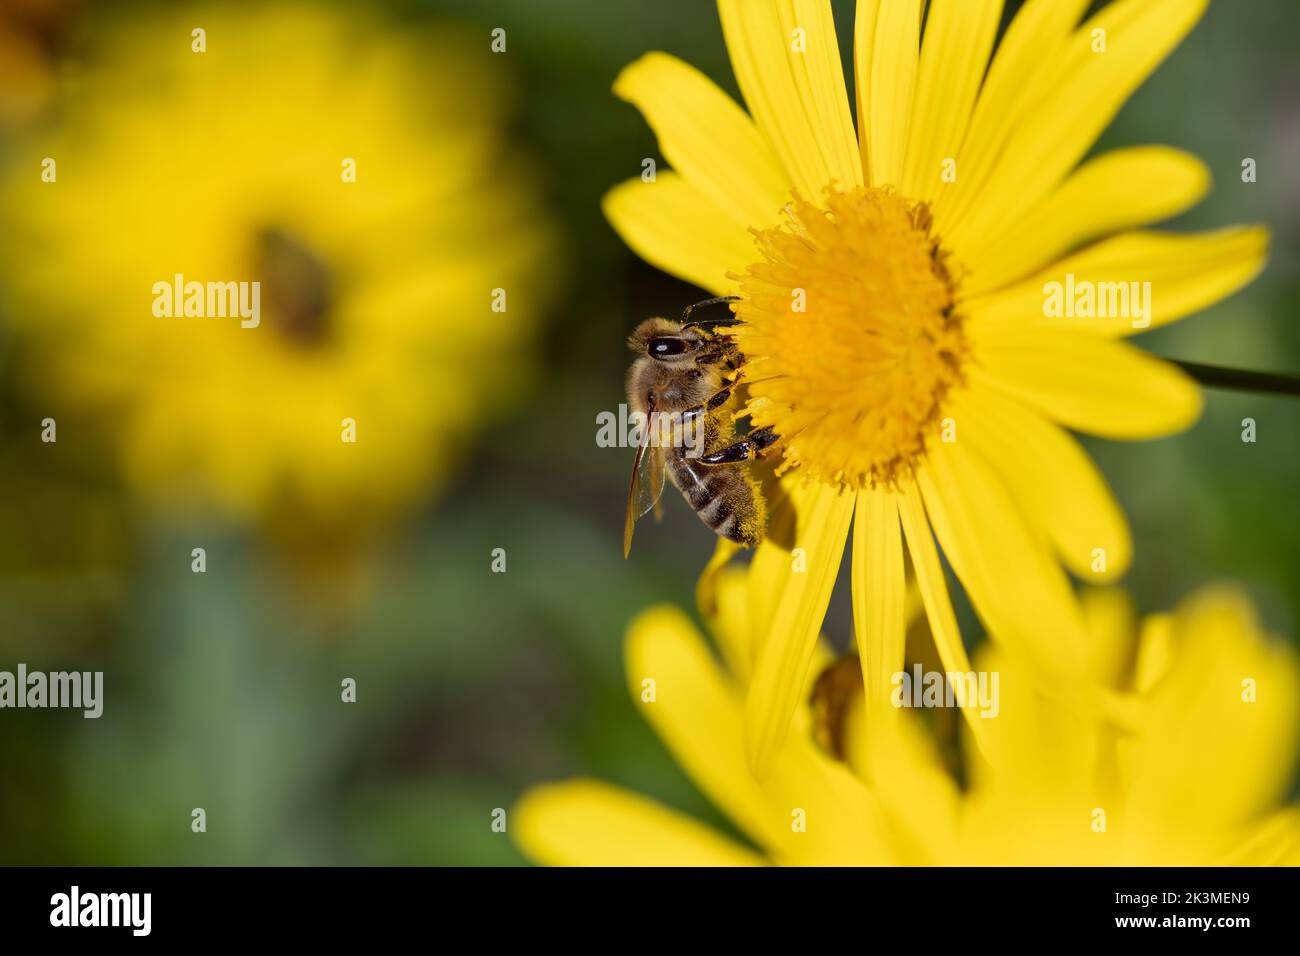 Una pequeña abeja de miel se asienta sobre una flor amarilla grande y busca polen. Foto de stock